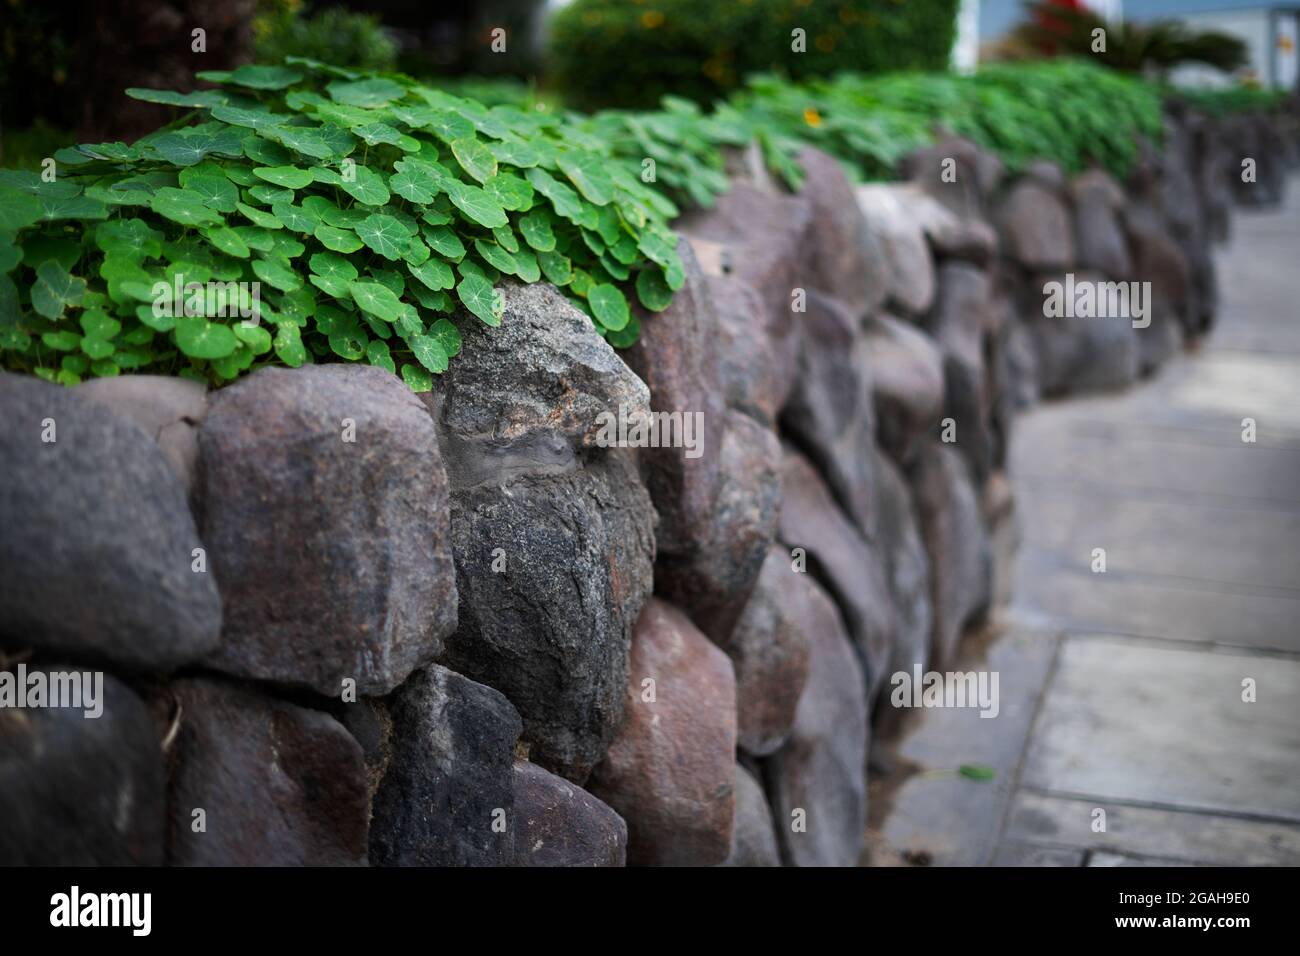 Hojas sobre la rocas, ombligo de venus Stock Photo